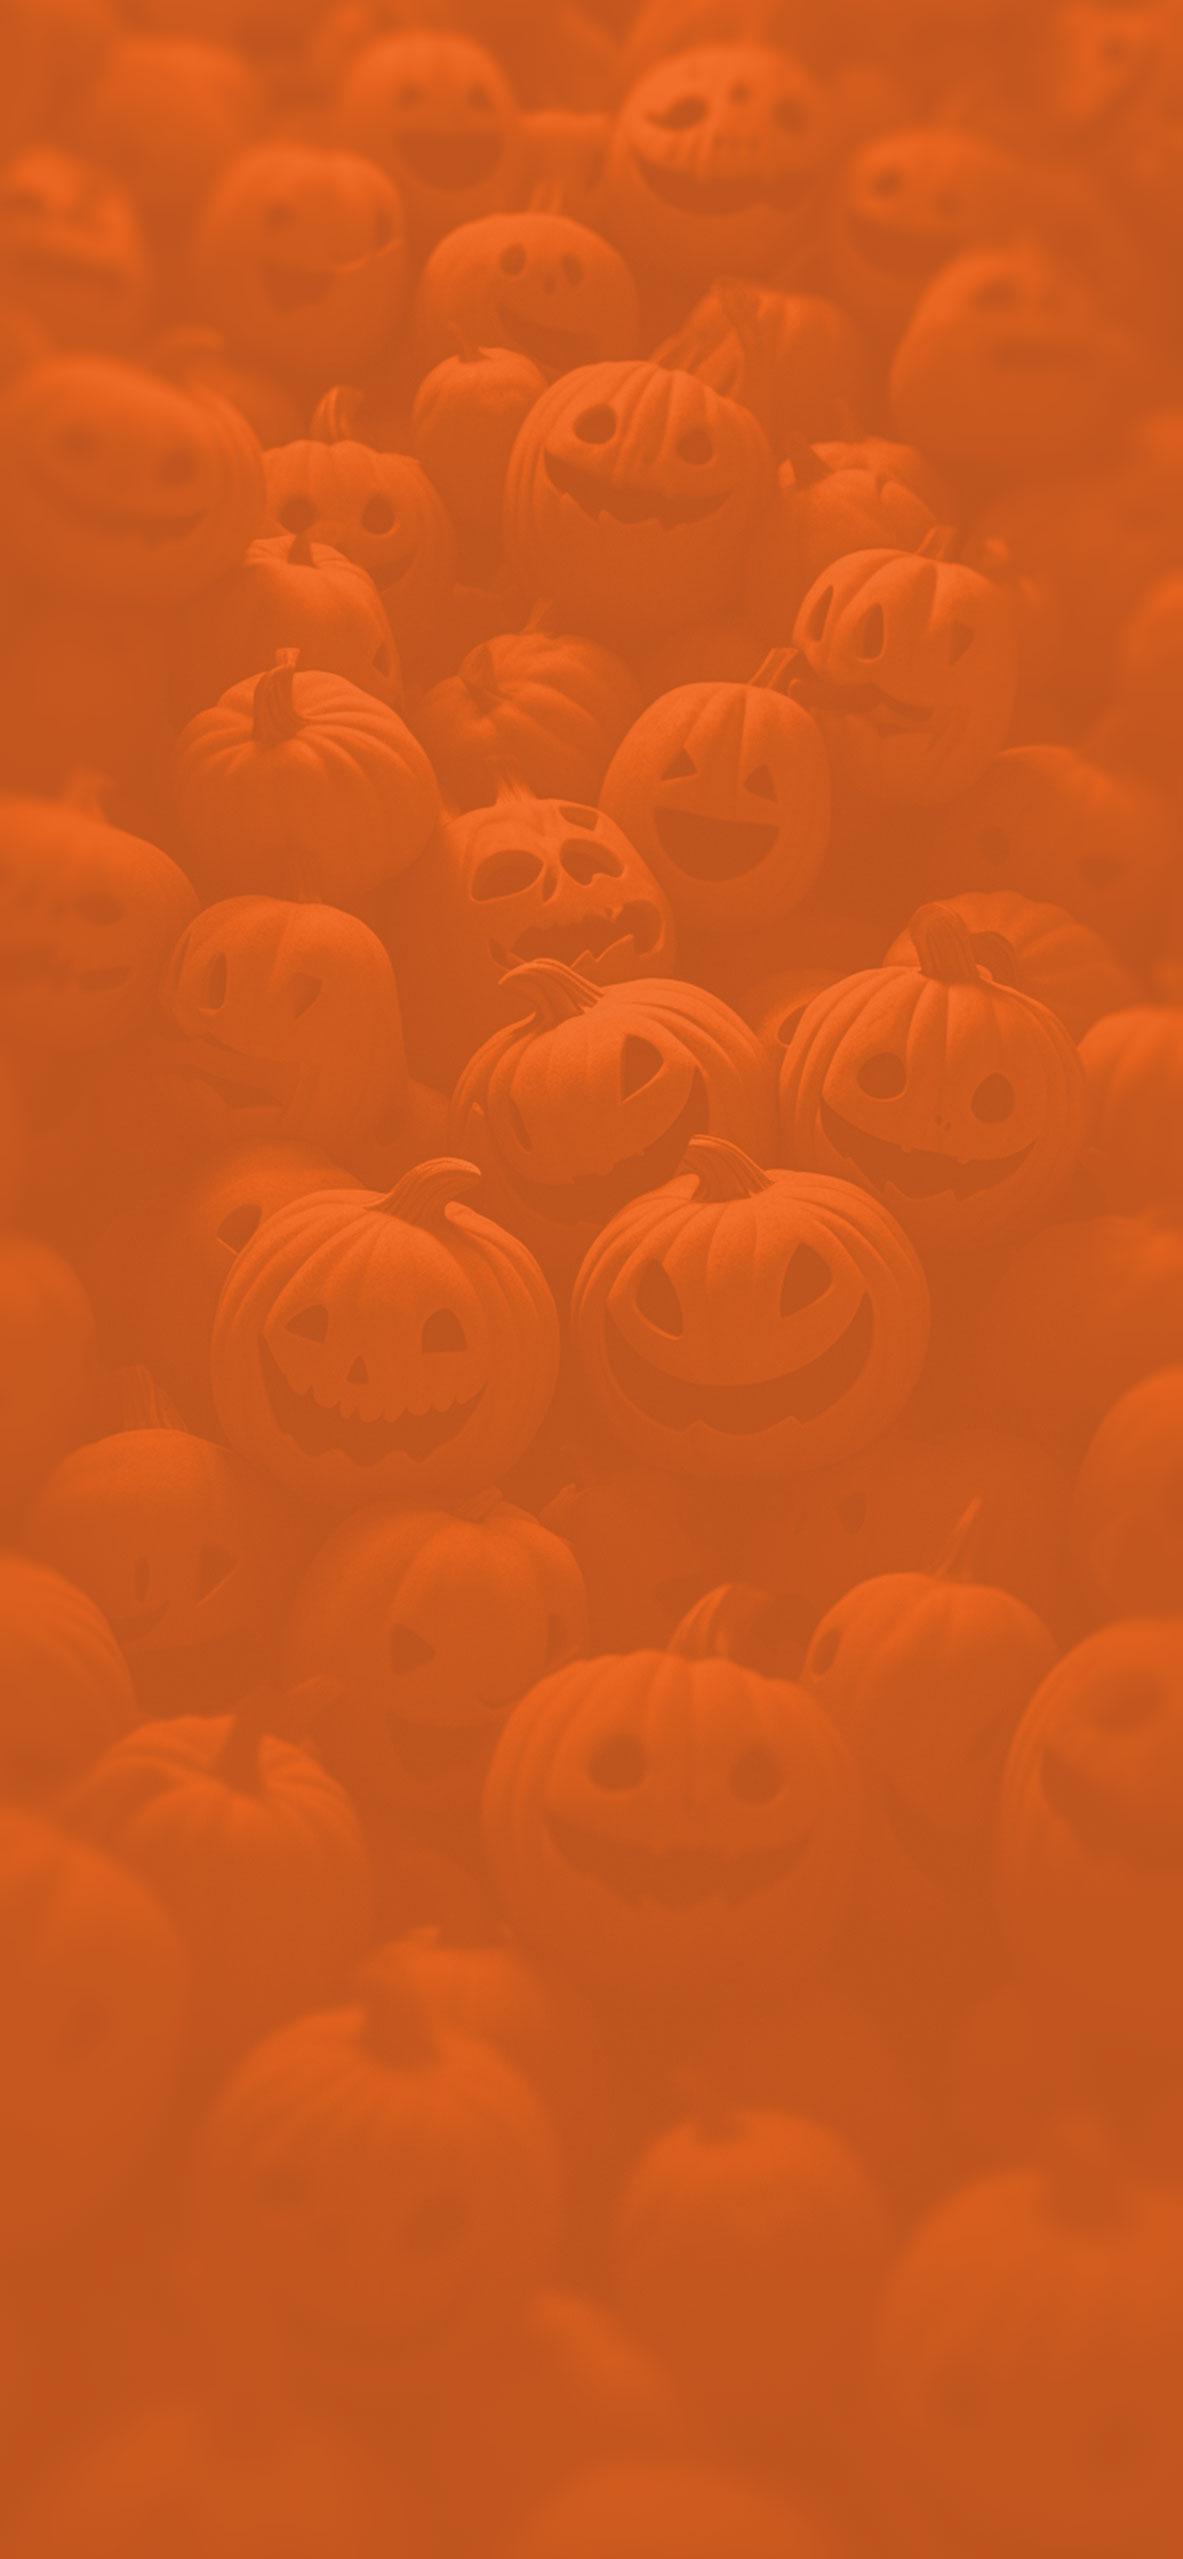 Funny Halloween Wallpapers   Free Halloween Pumpkin Wallpapers